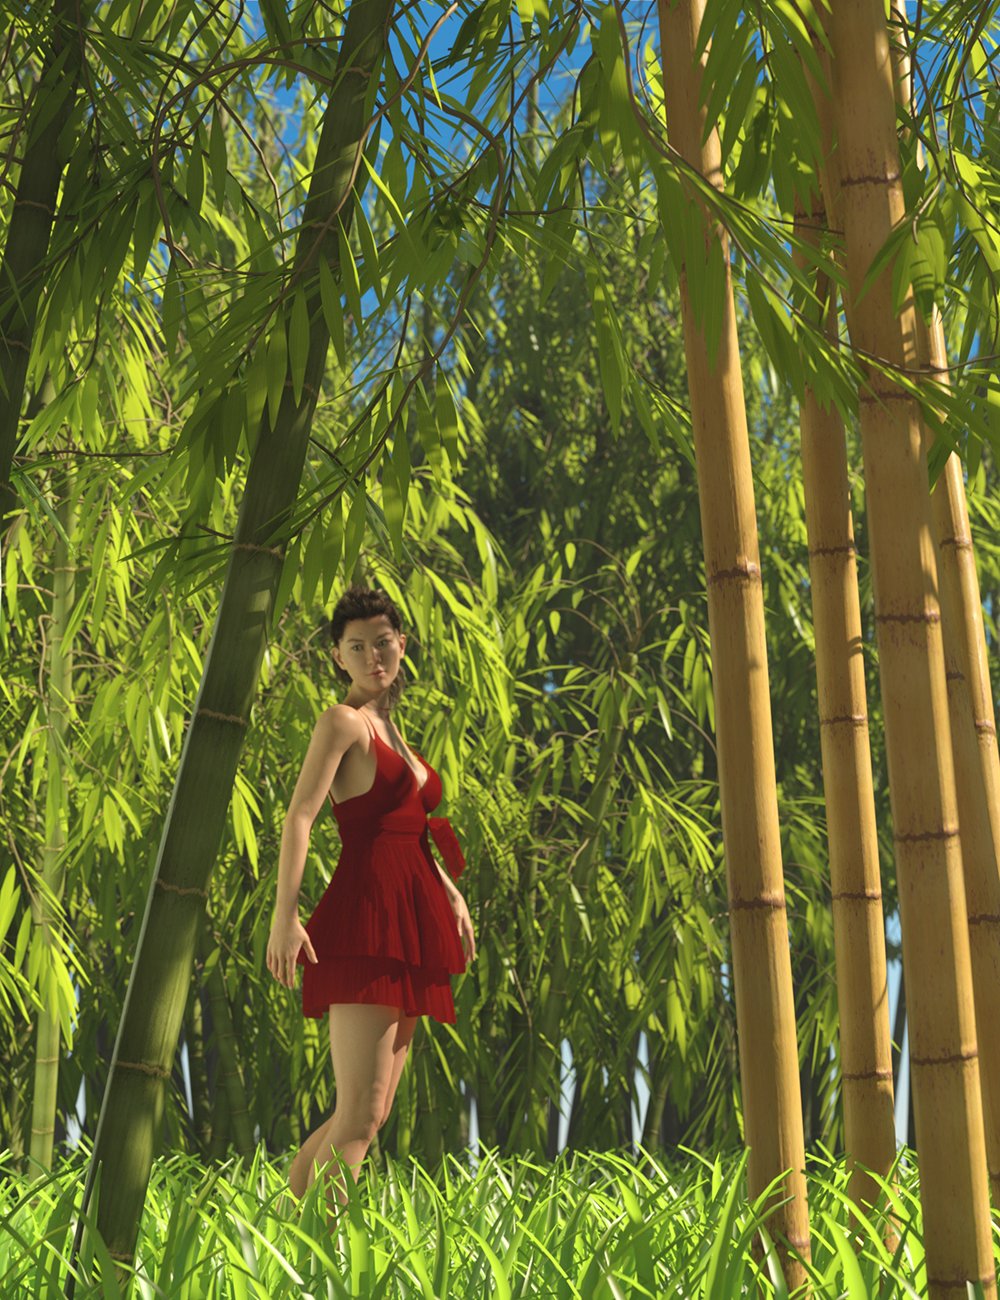 Predatron Bamboo Plants by: Predatron, 3D Models by Daz 3D